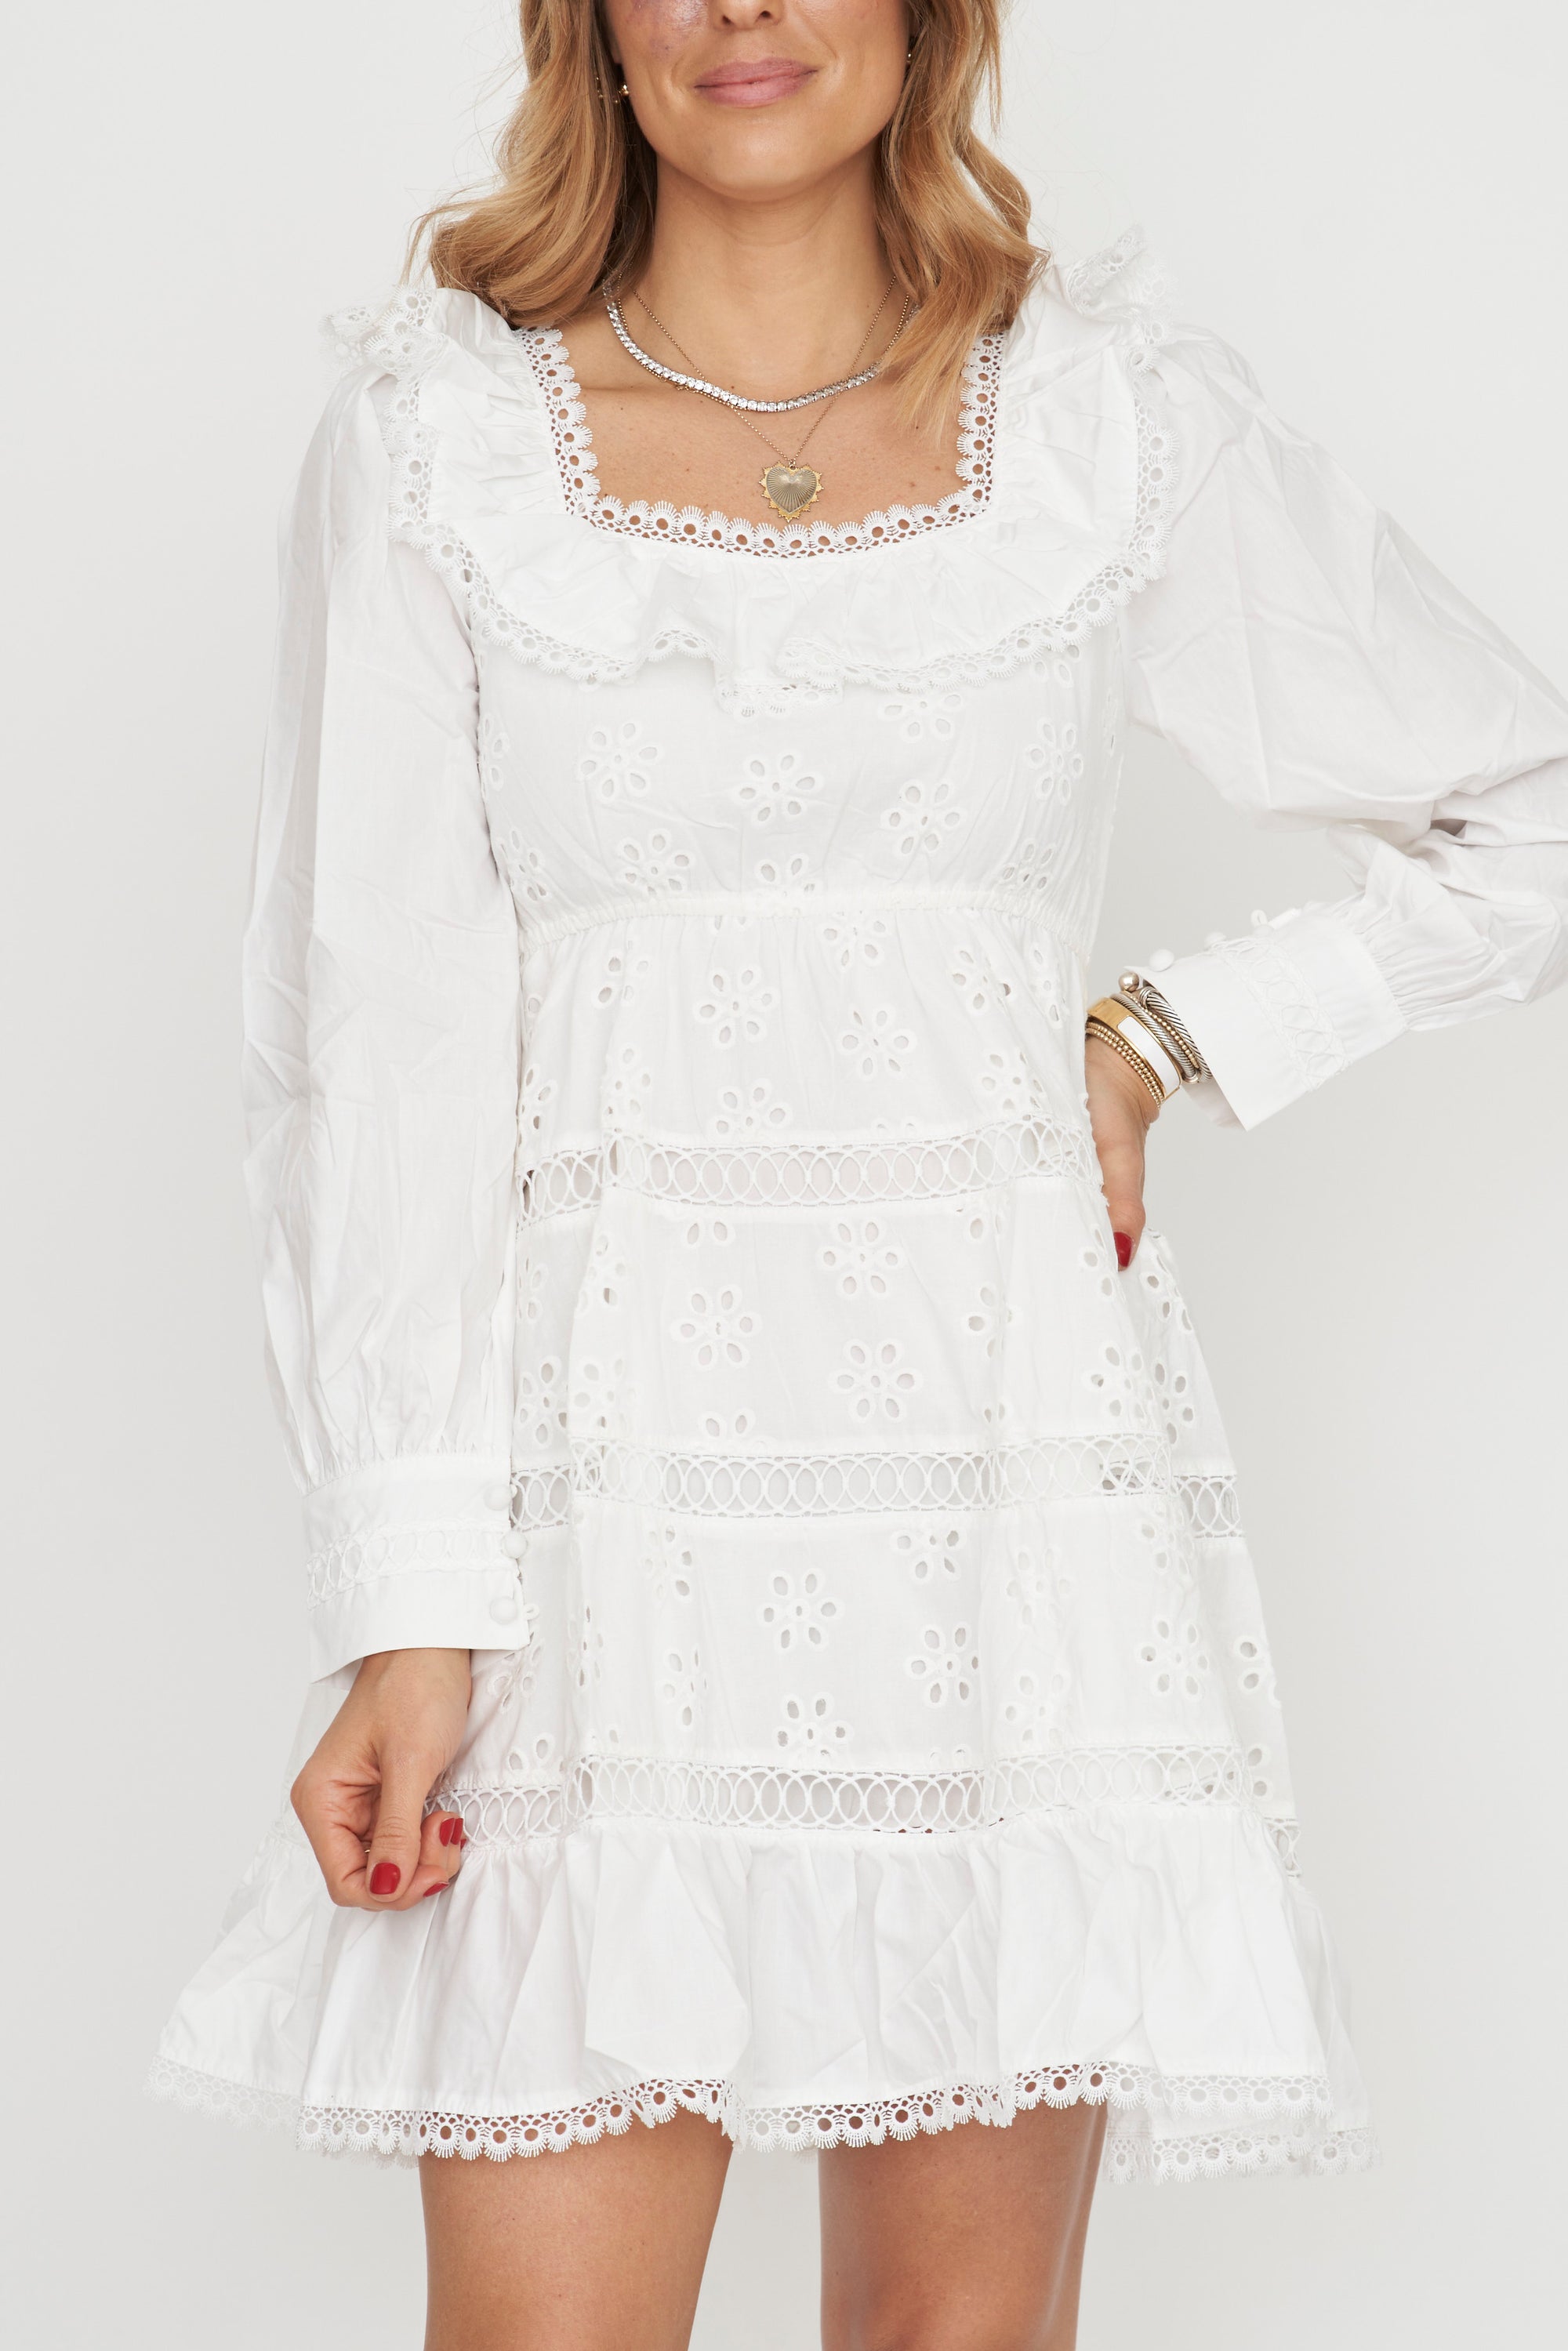 Sydney White Eyelet Dress